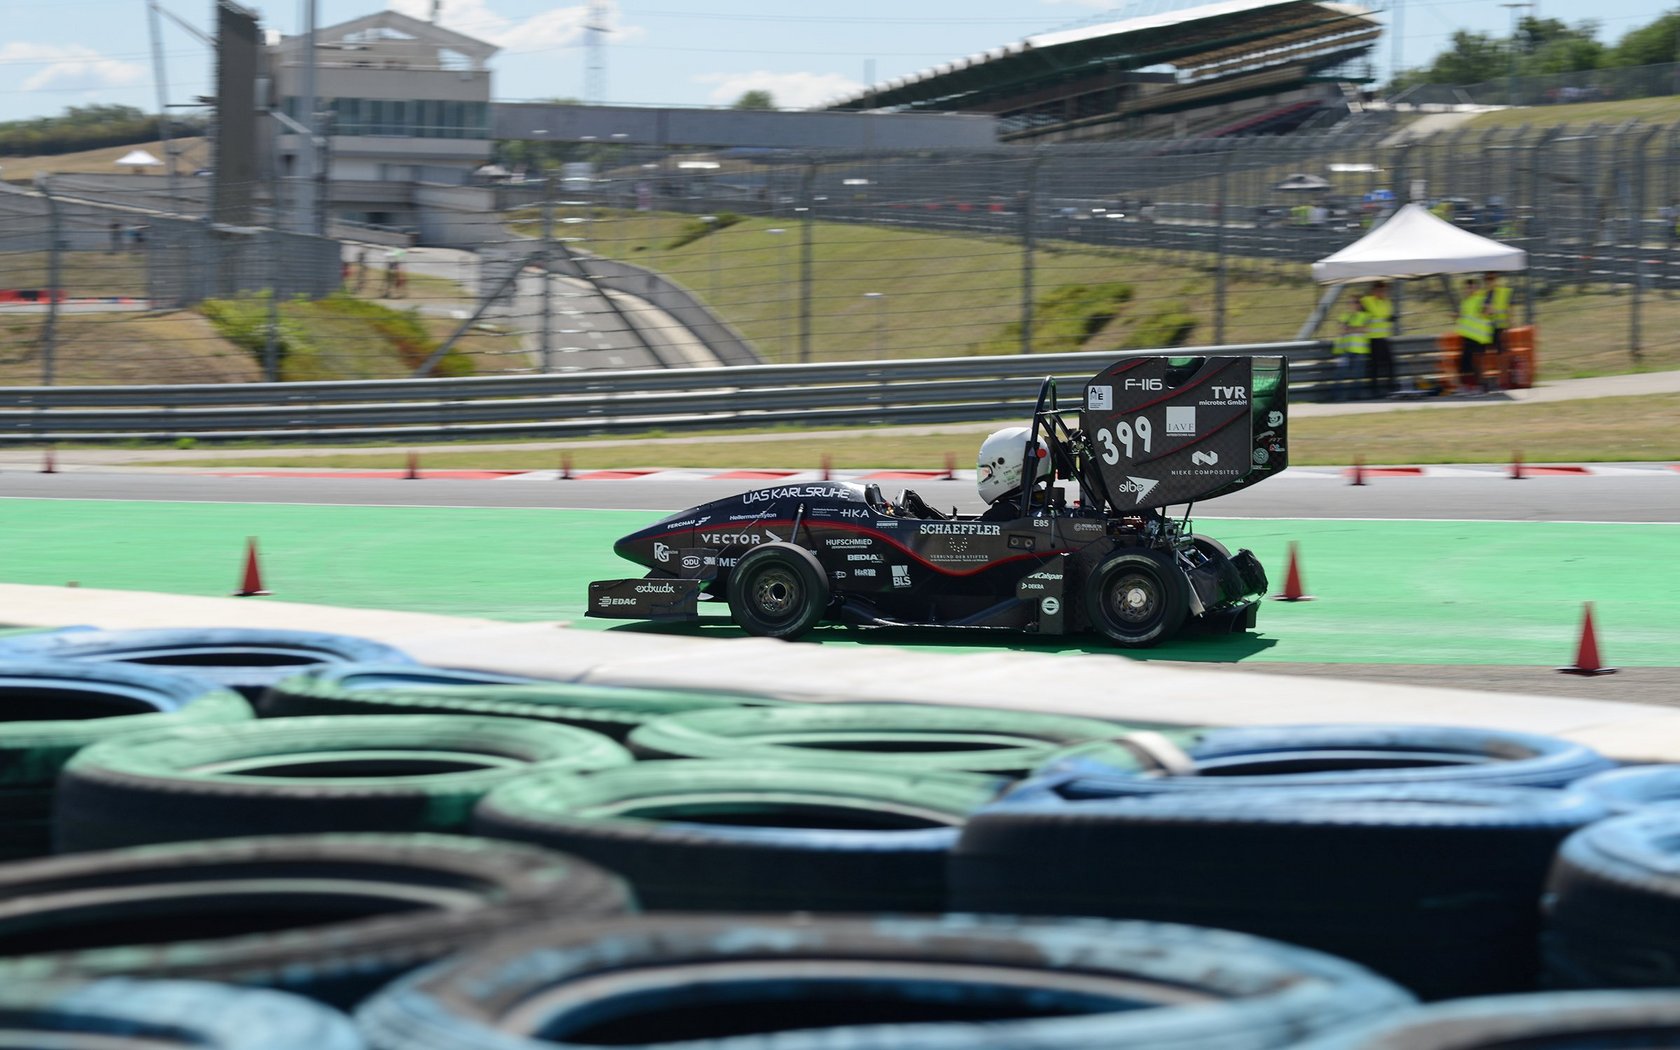 HKA race car on the track